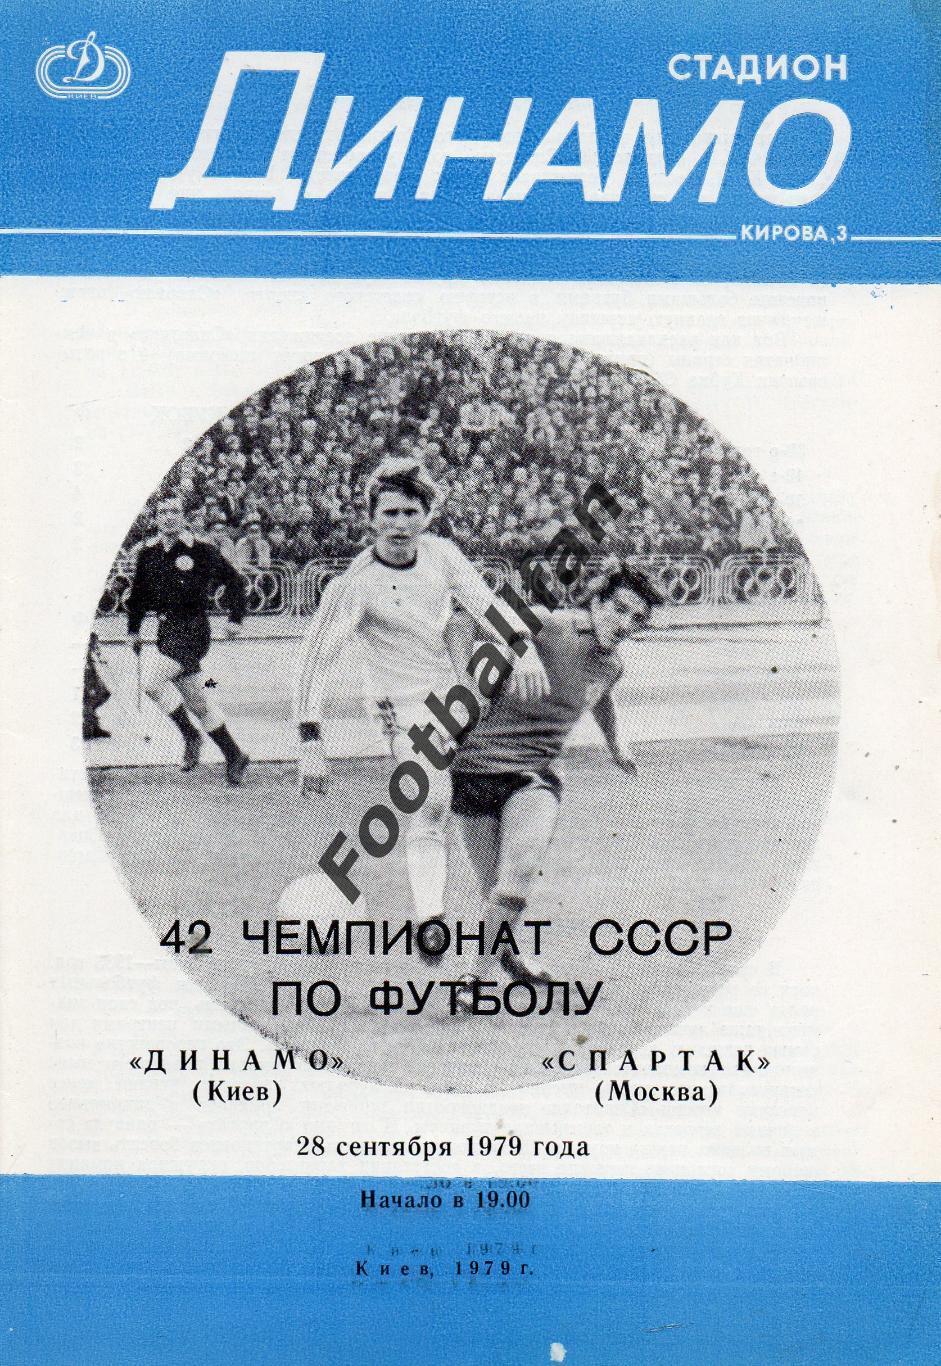 Динамо Киев - Спартак Москва 28.09.1979